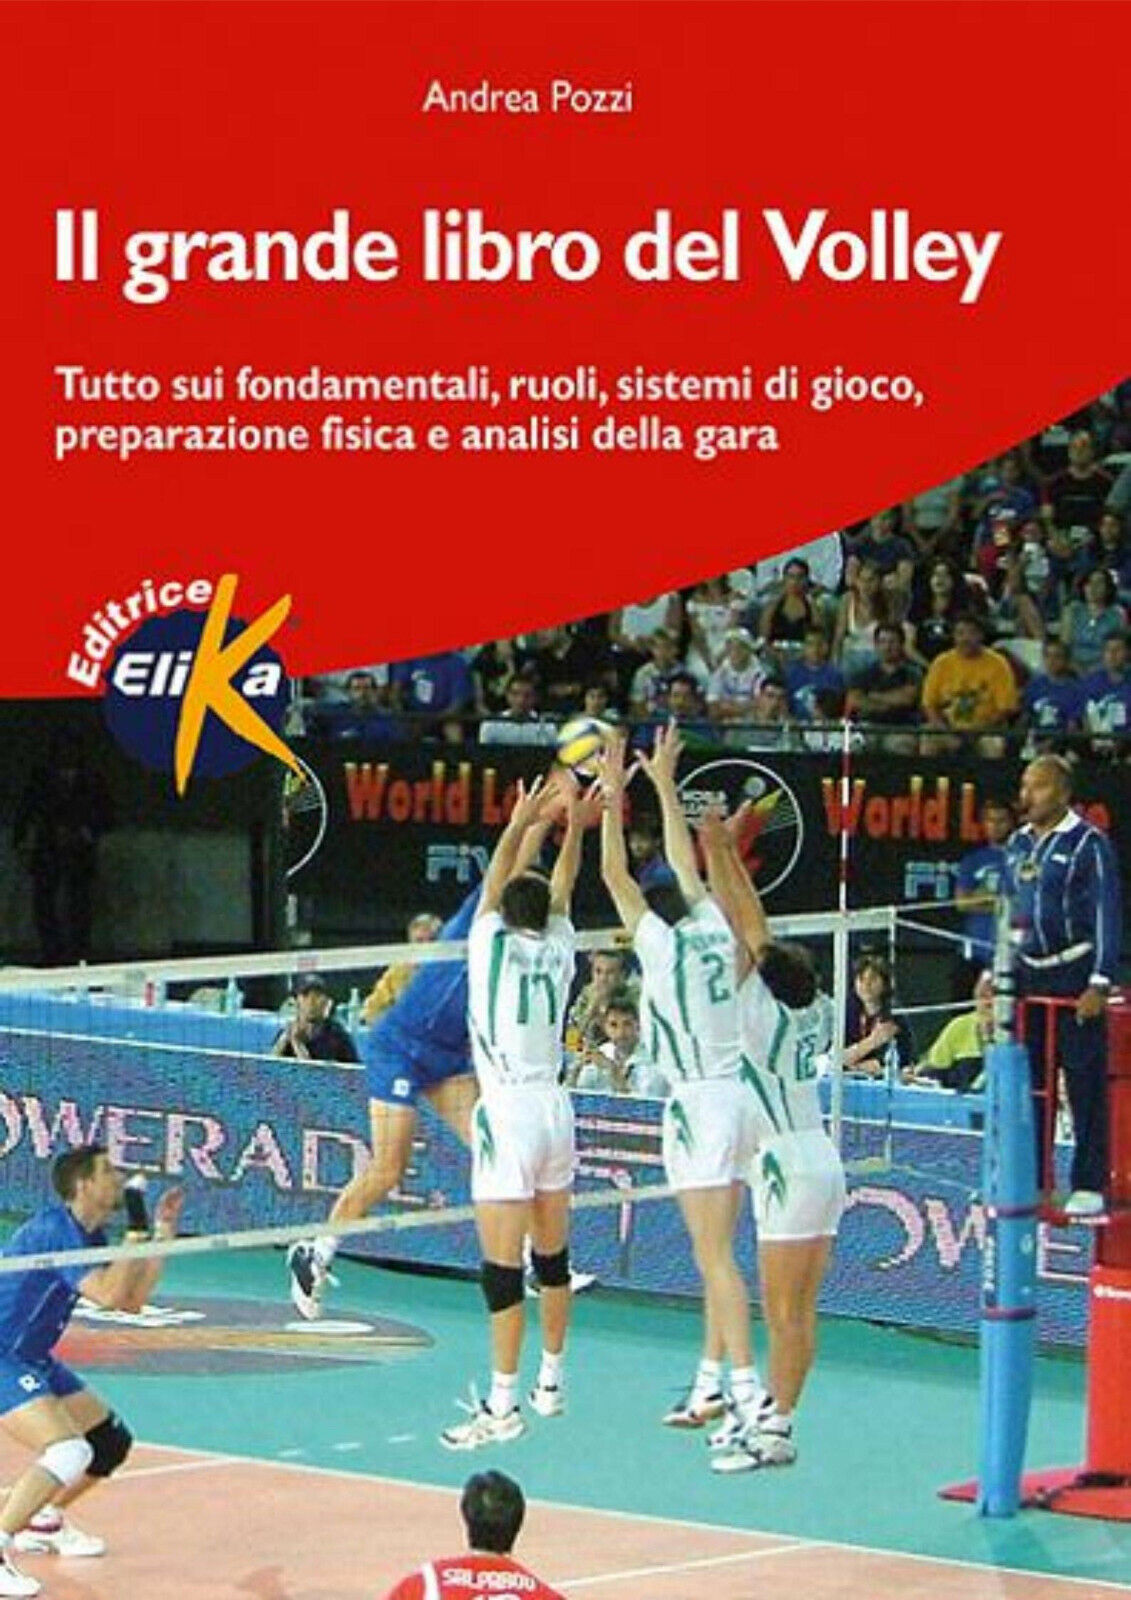 Il grande libro del volley - Andrea Pozzi - Elika, 2005 libro usato